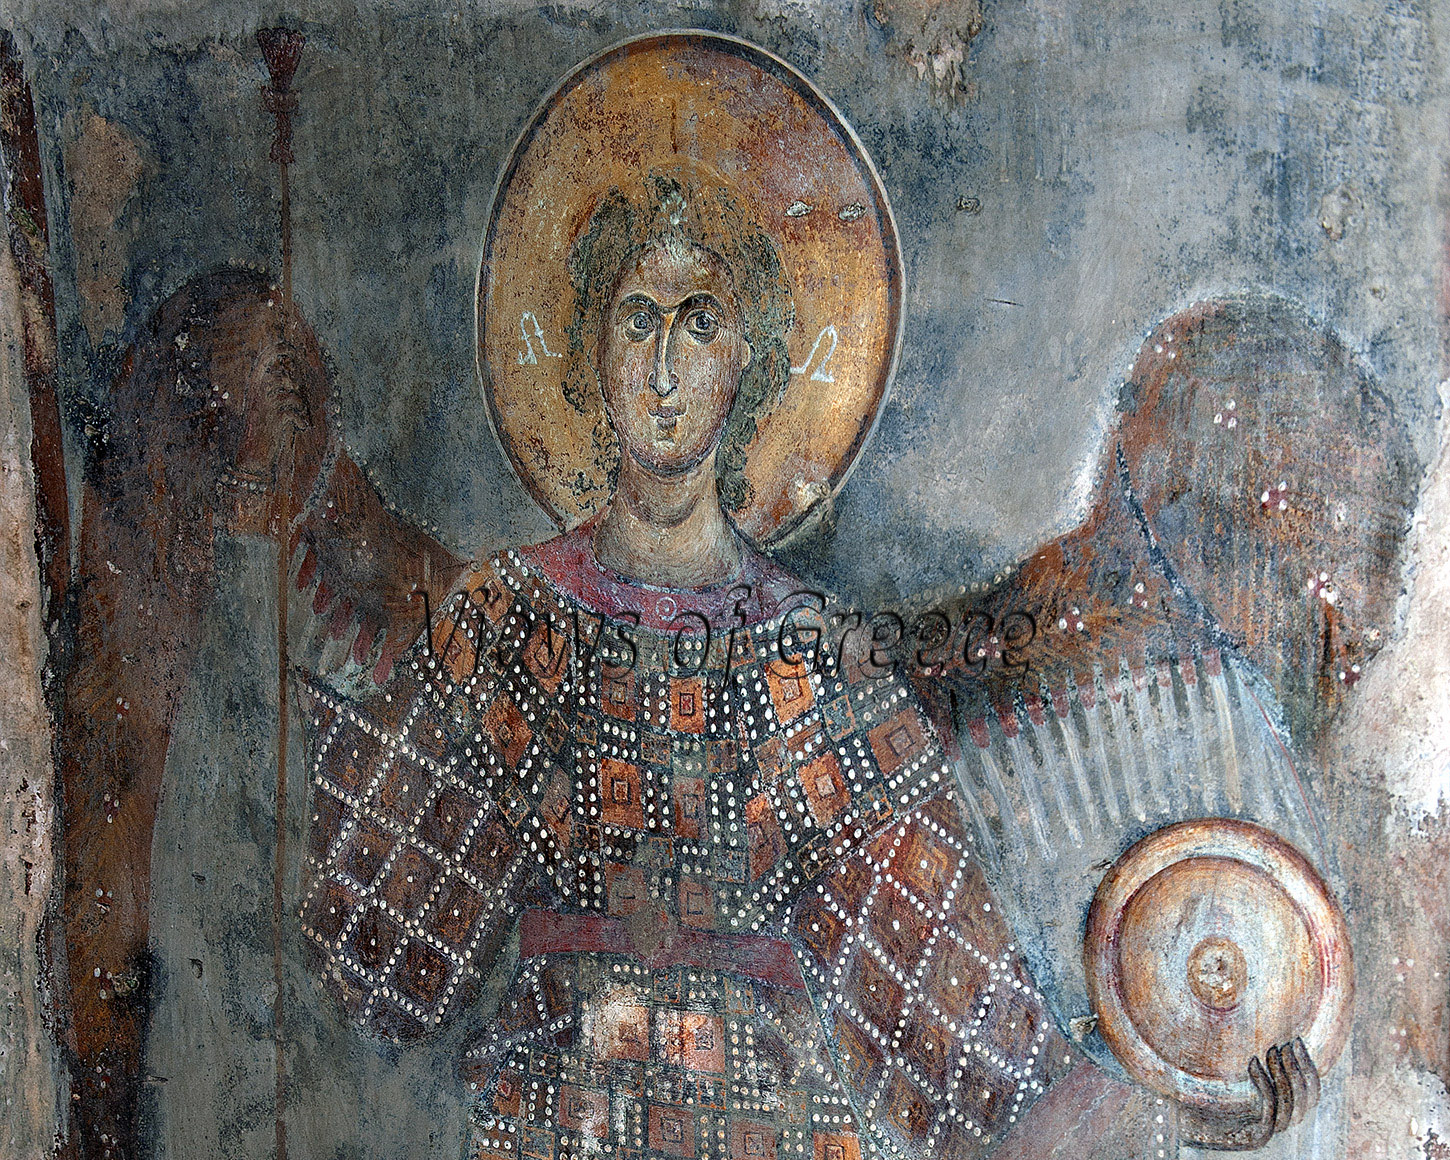 Μάνη, Παναγία Οδηγήτρια, τοιχογραφία στο εσωτερικό του ναού